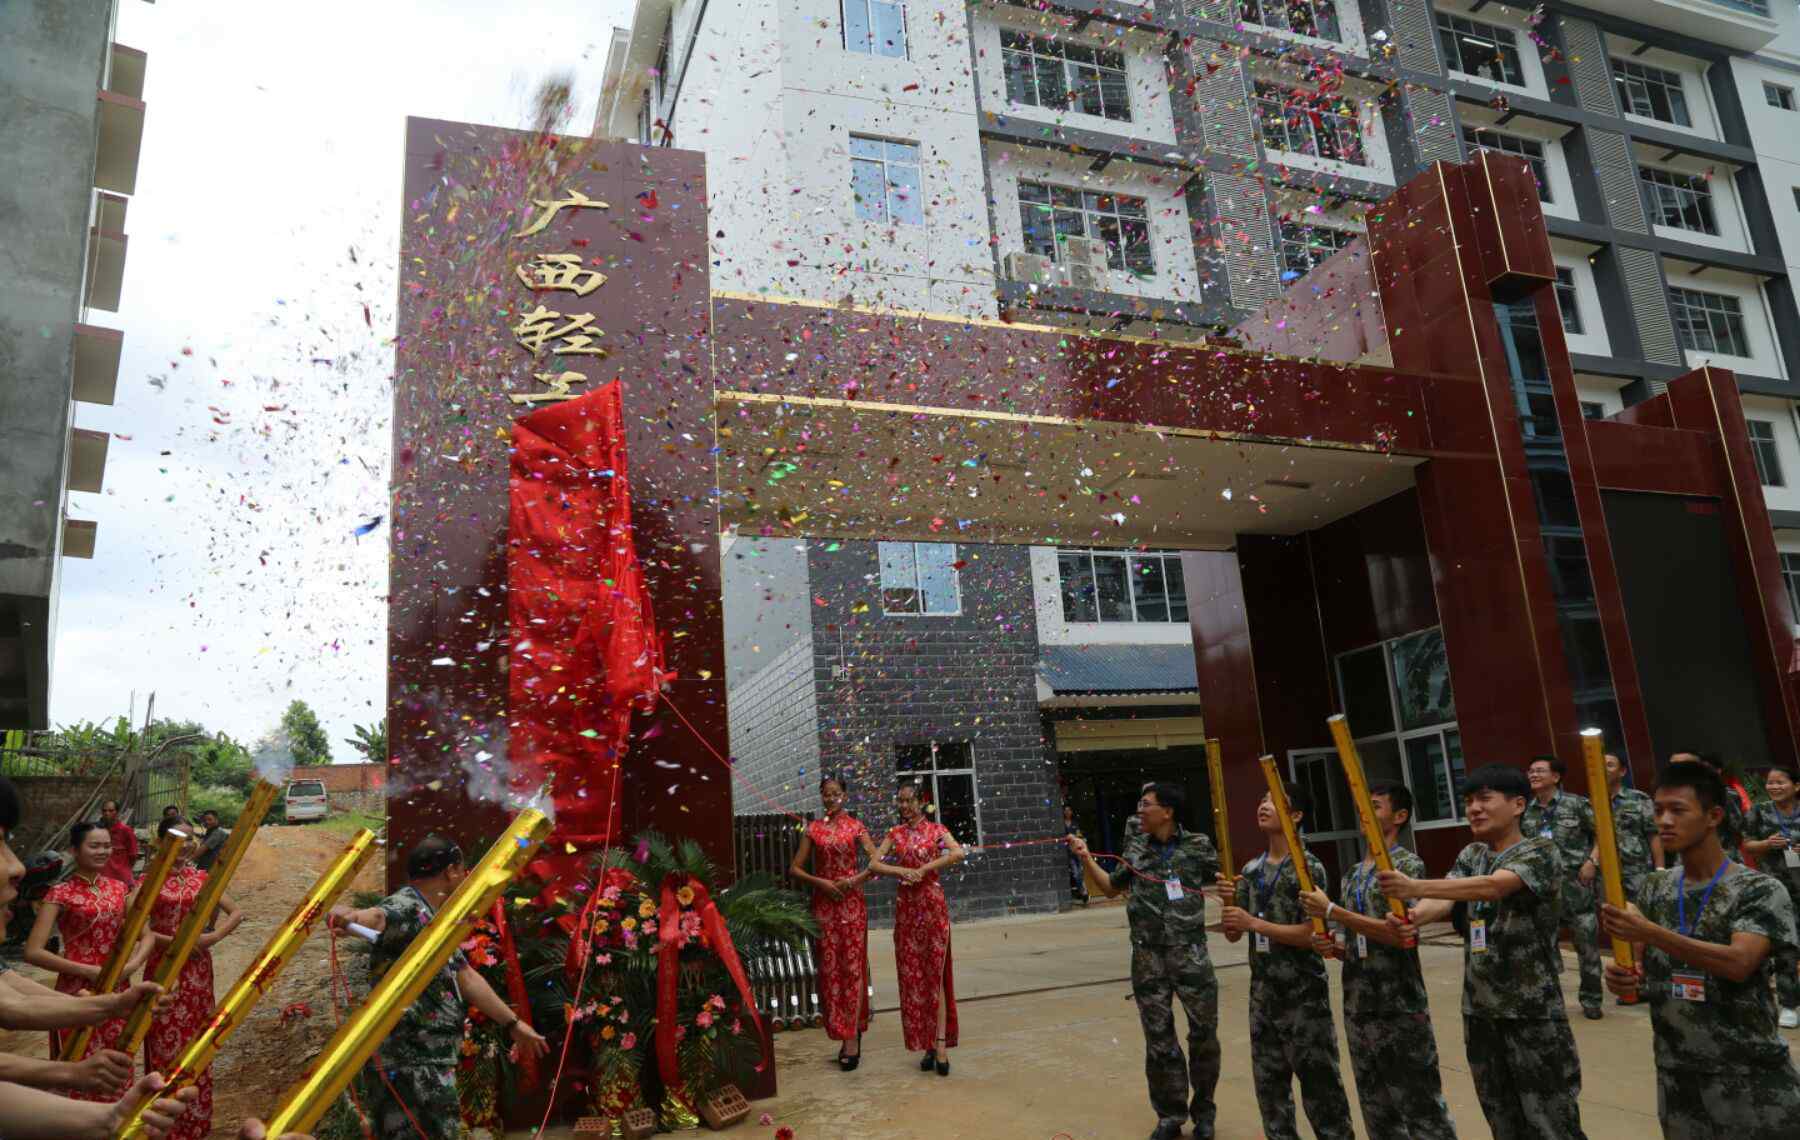 广西轻工业学校 广西轻工技师学院五象校区进驻一周年纪念